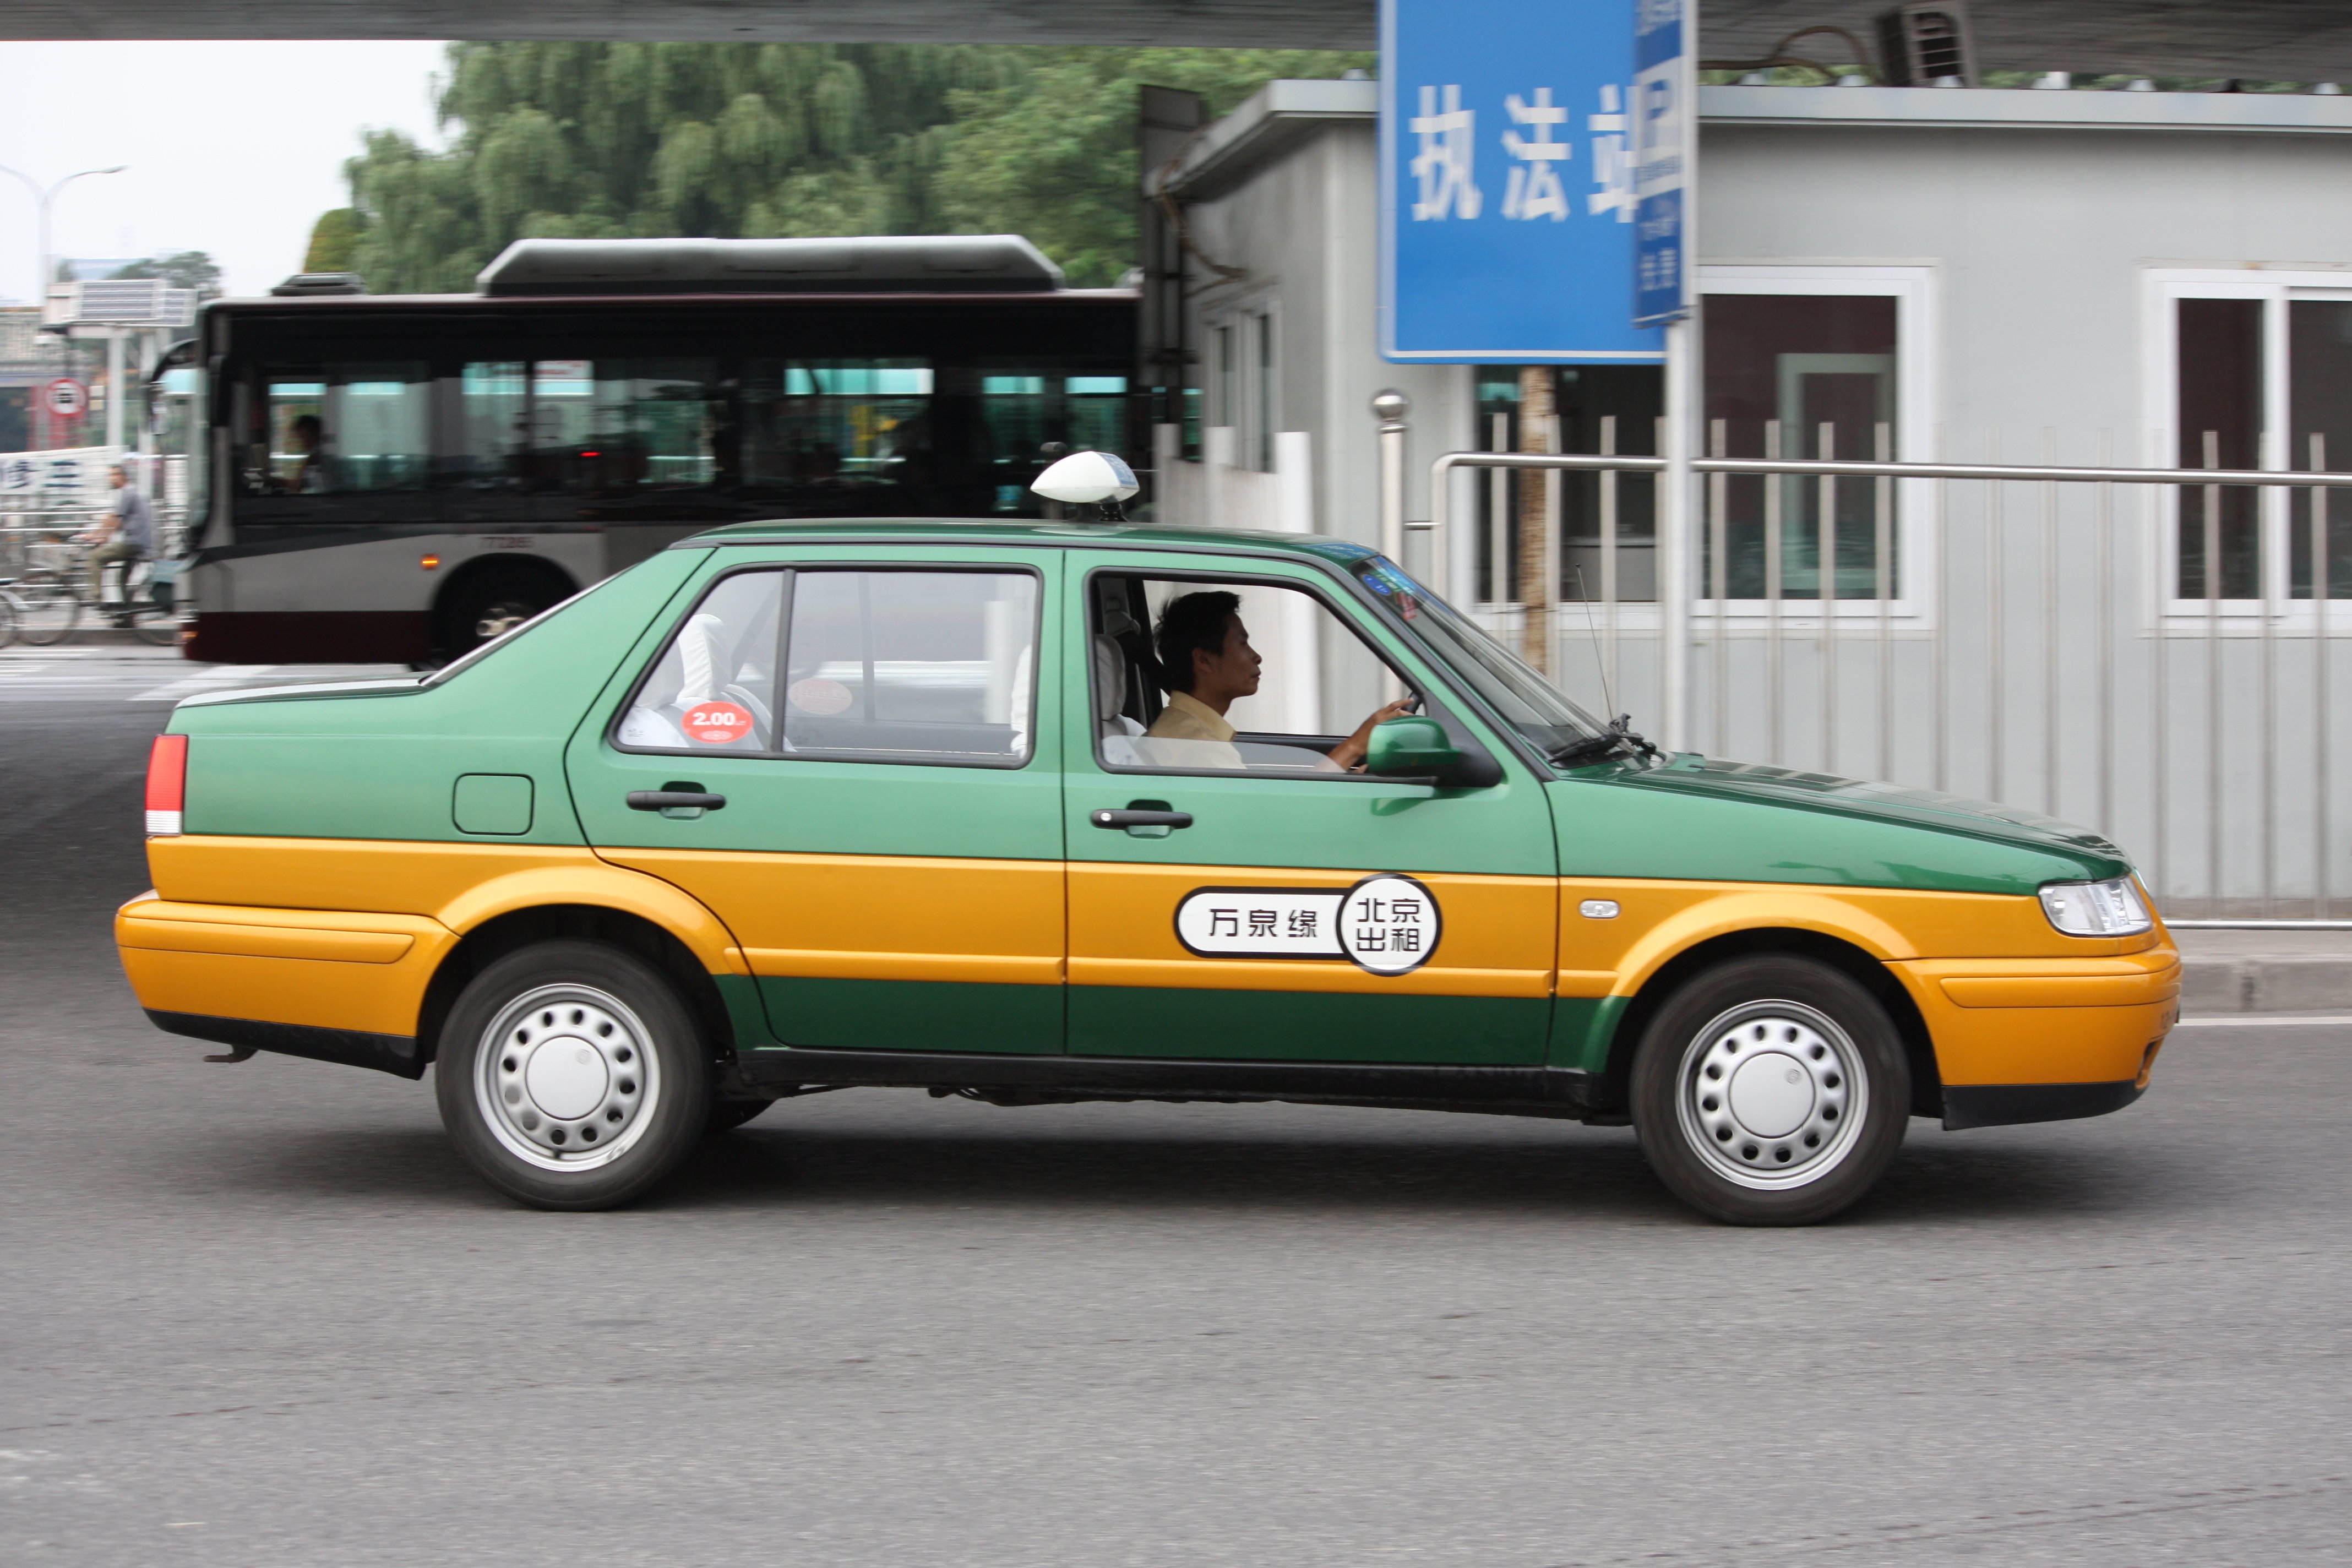 beijing-plans-to-convert-taxi-fleet-to-electric-the-beijinger